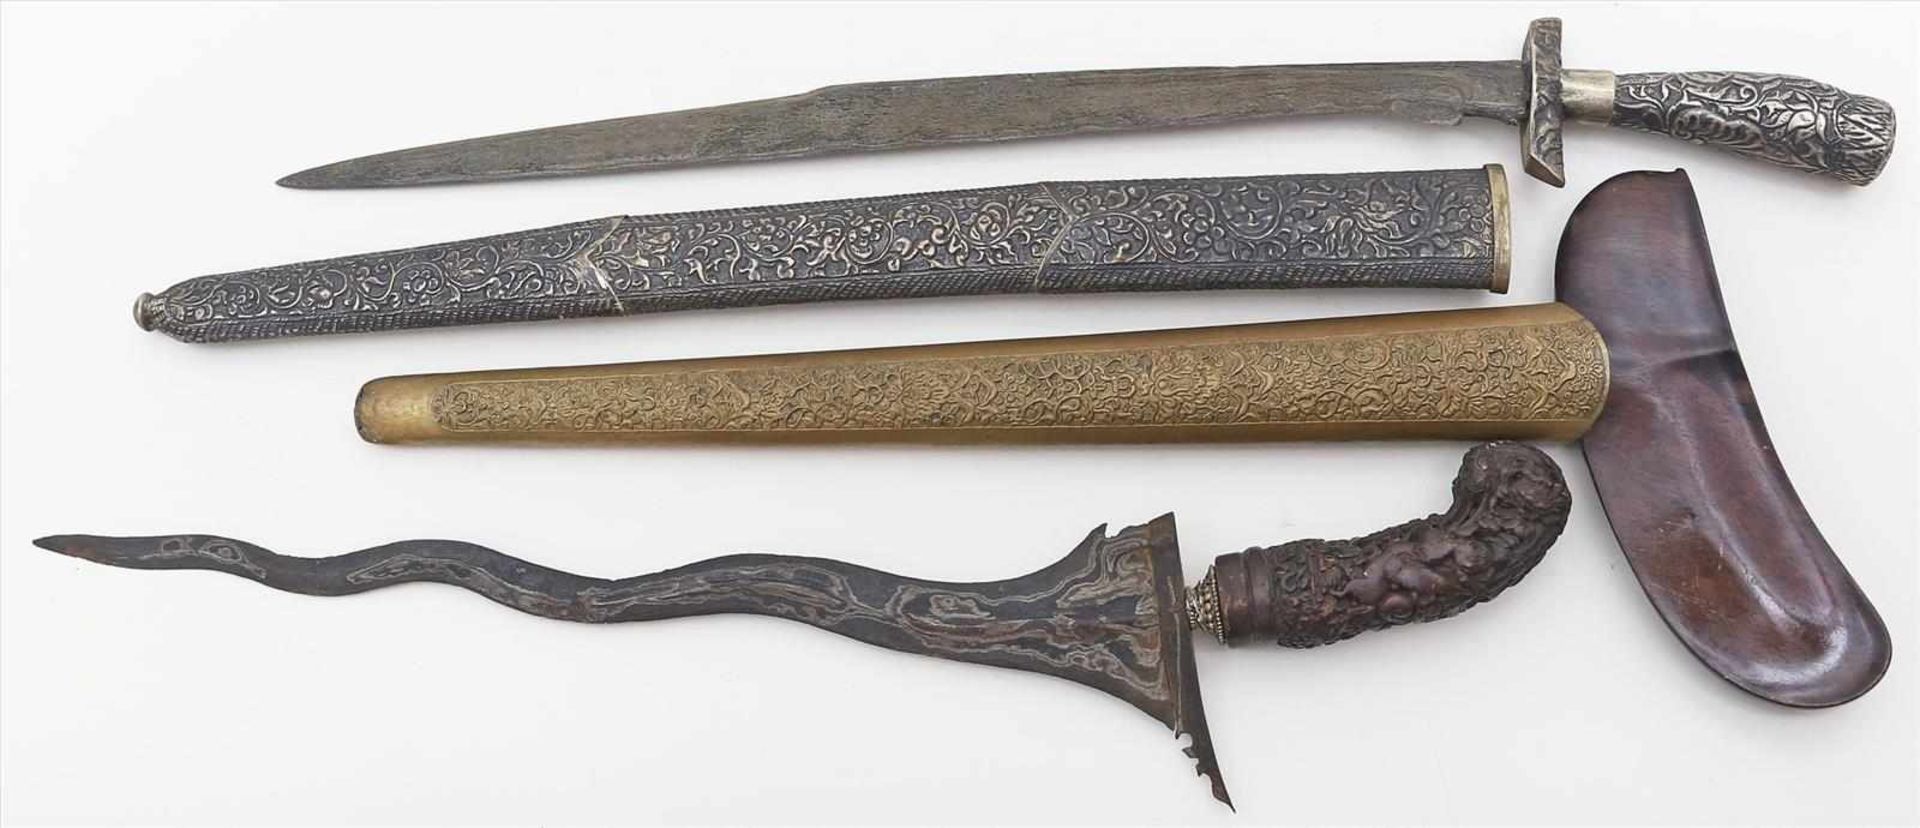 2 Messer bzw. Dolche.Metall, 1x mit geschnitztem Holzgriff, Scheiden mit reliefiertem Dekor. Teils